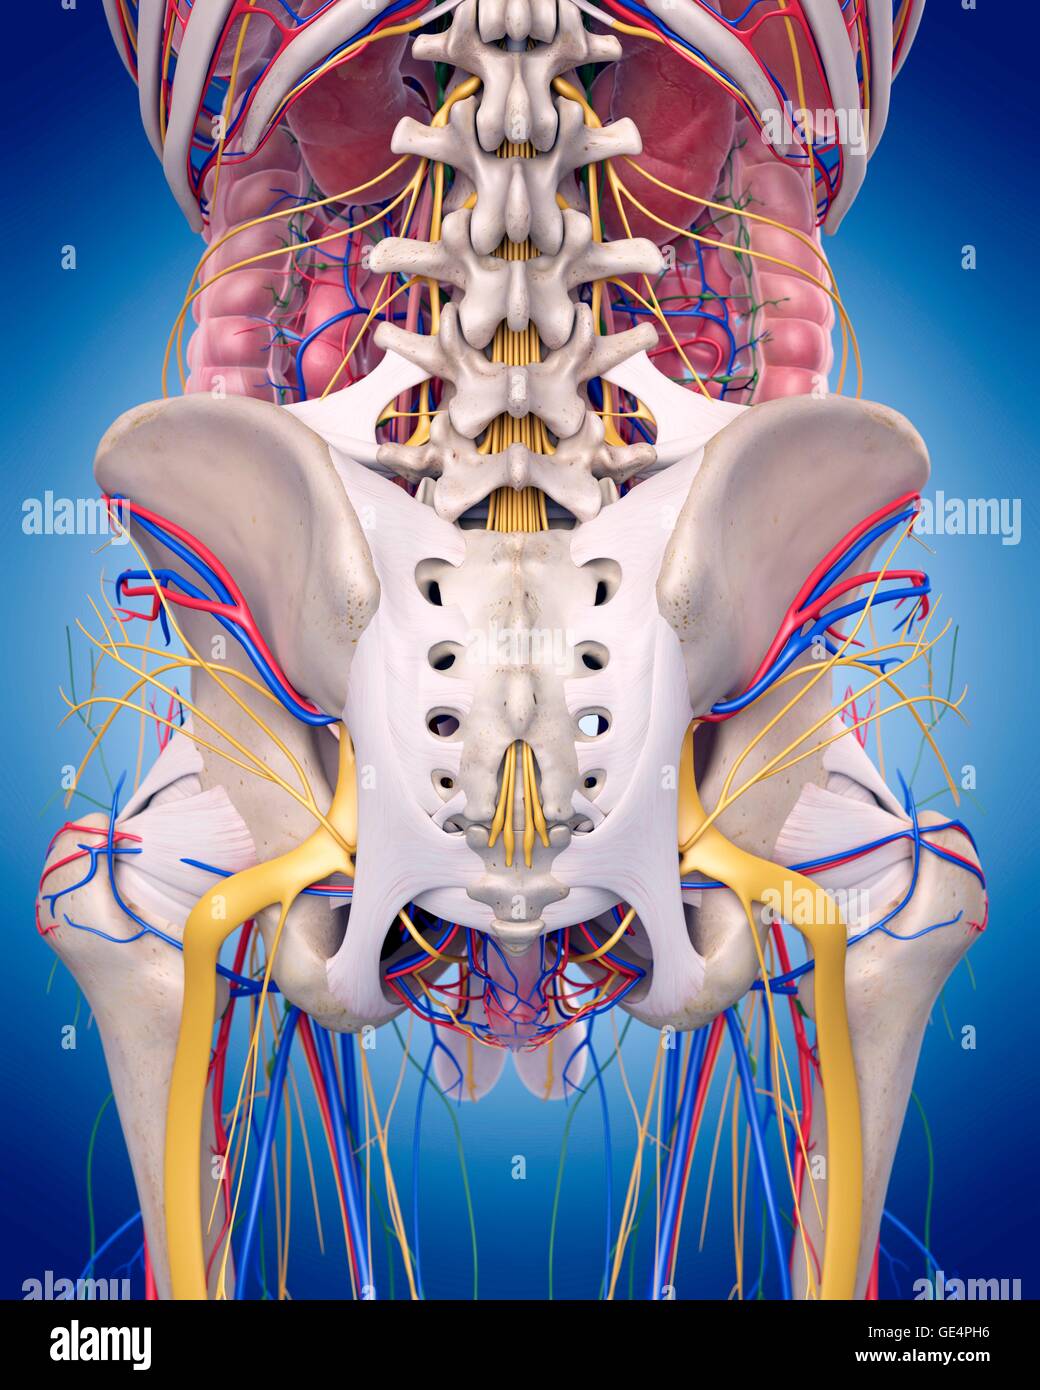 Human hip anatomy, illustration. Stock Photo